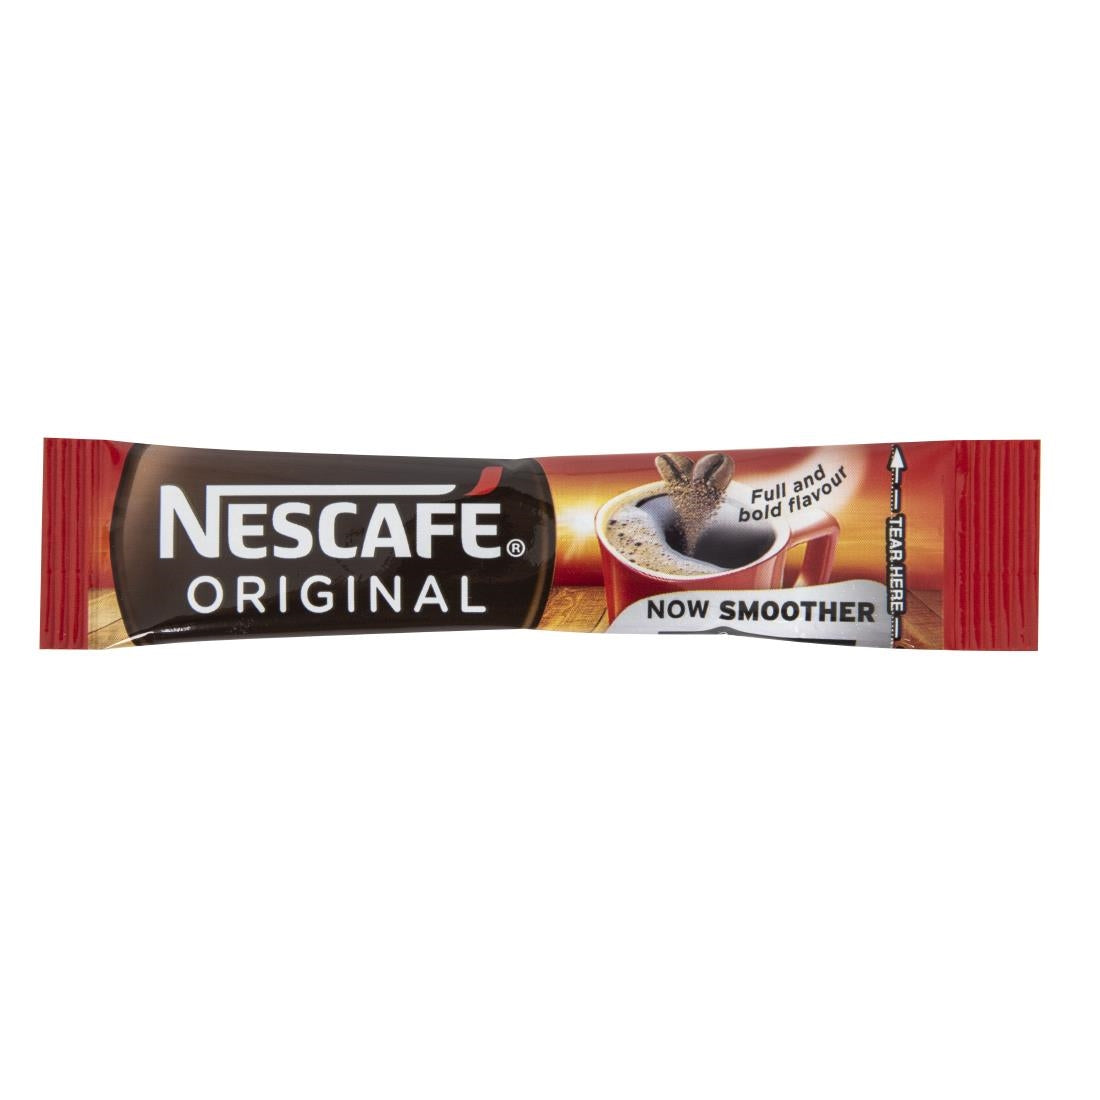 Nescafe Original Stick (Pack of 200)